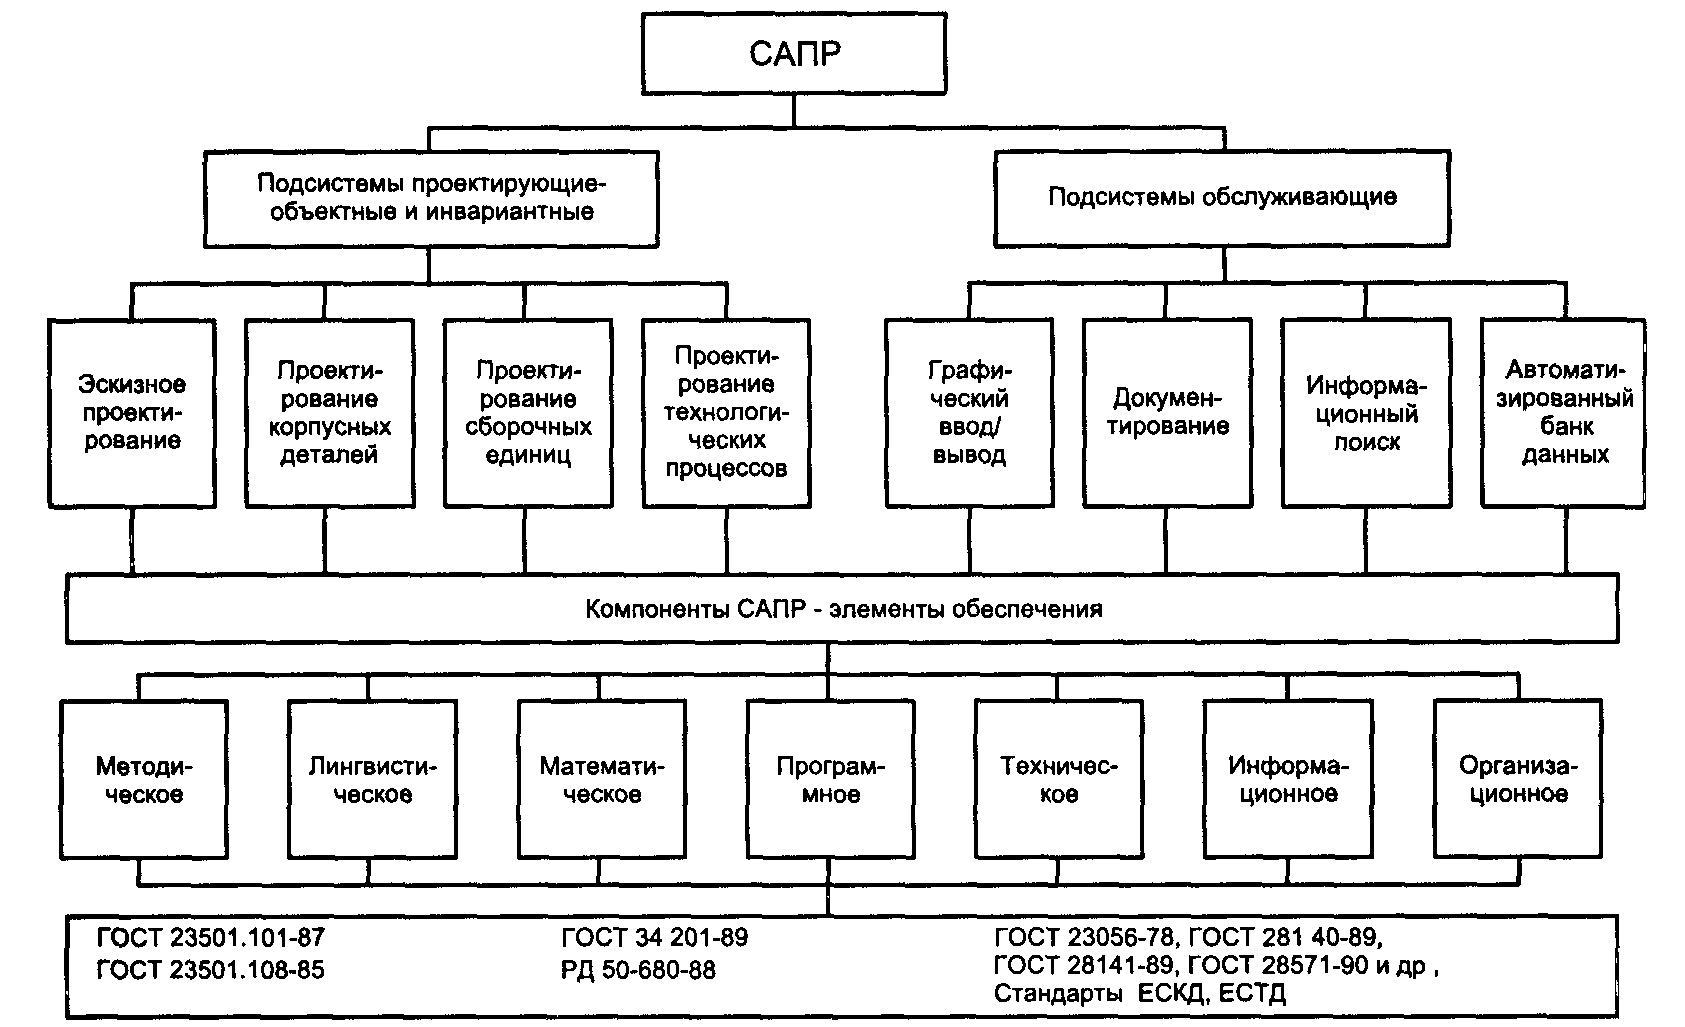 Типовые модели систем. Состав САПР-систем:. Структурная схема САПР. Структура технического обеспечения САПР. Структурные элементы САПР.